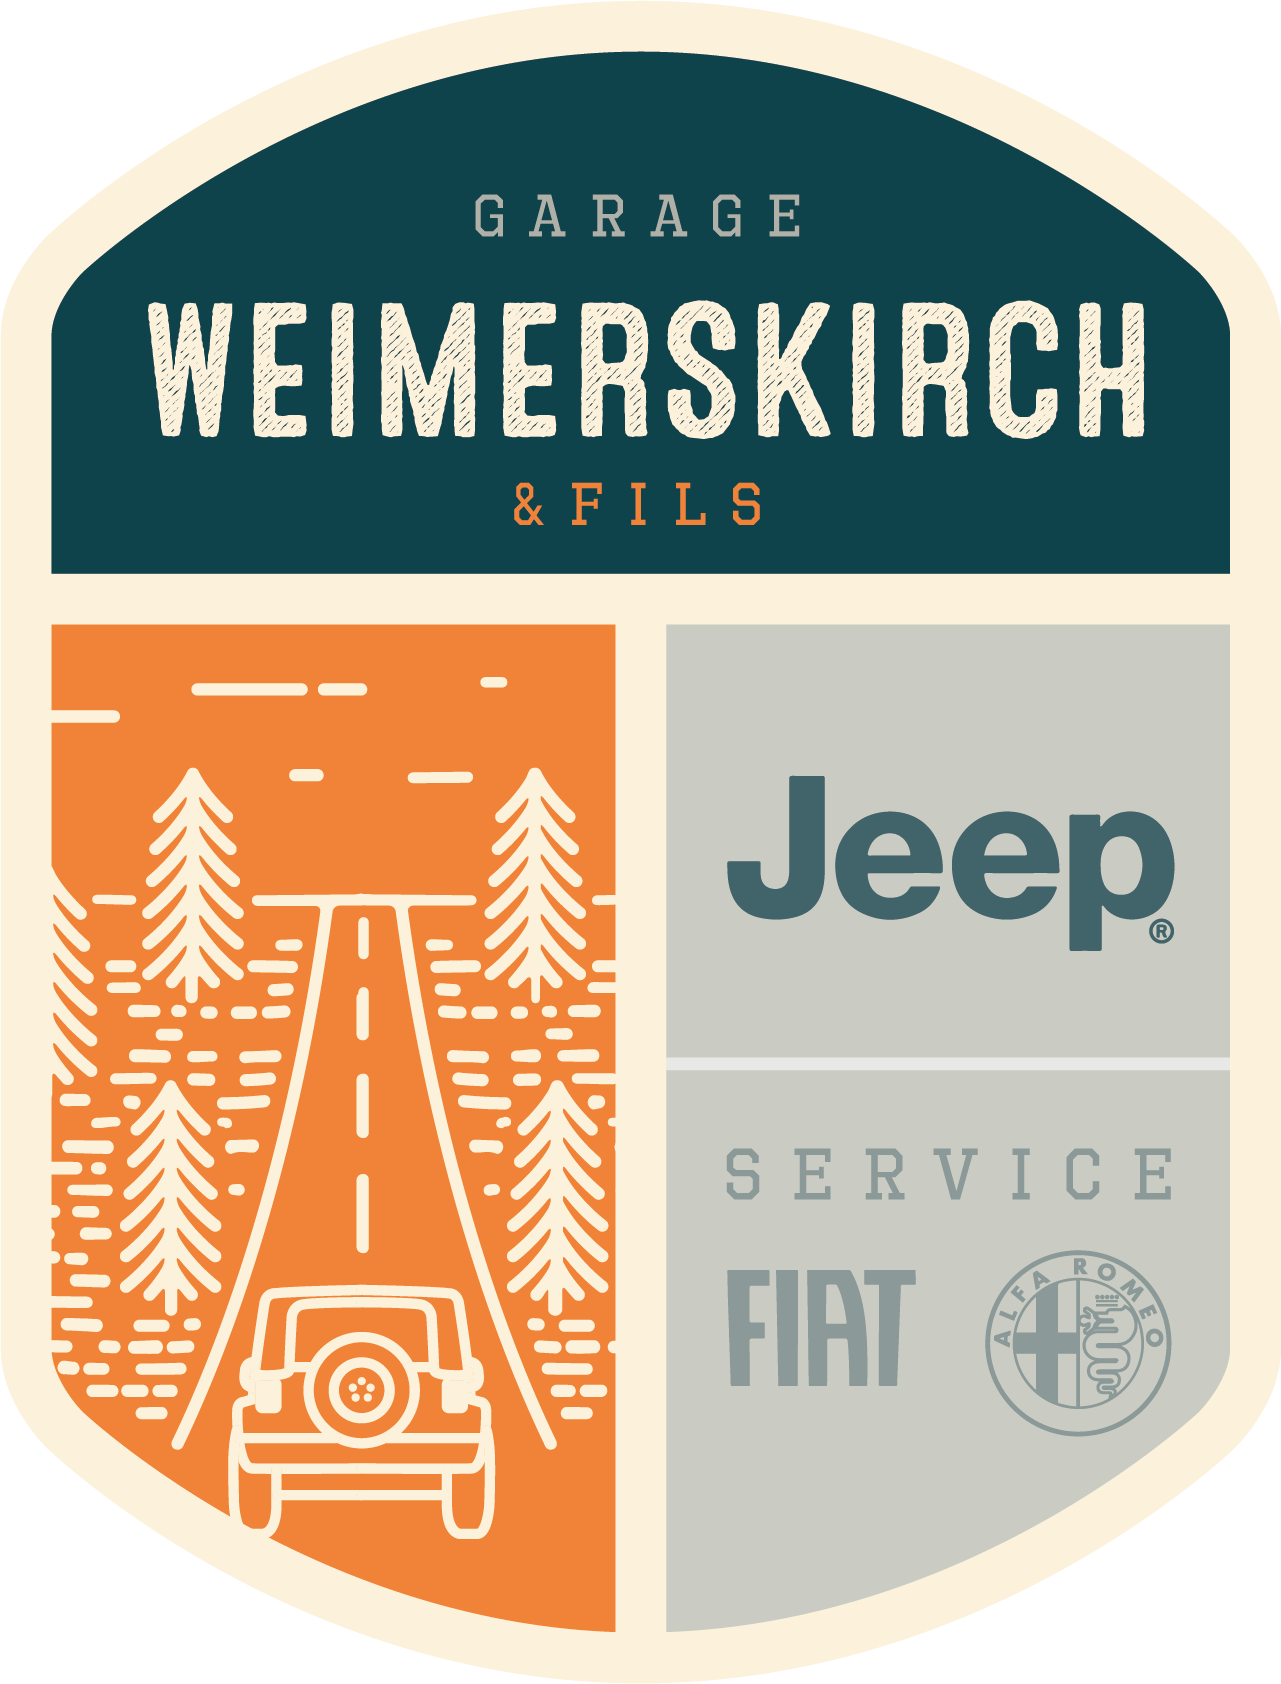 (c) Weimerskirch.com